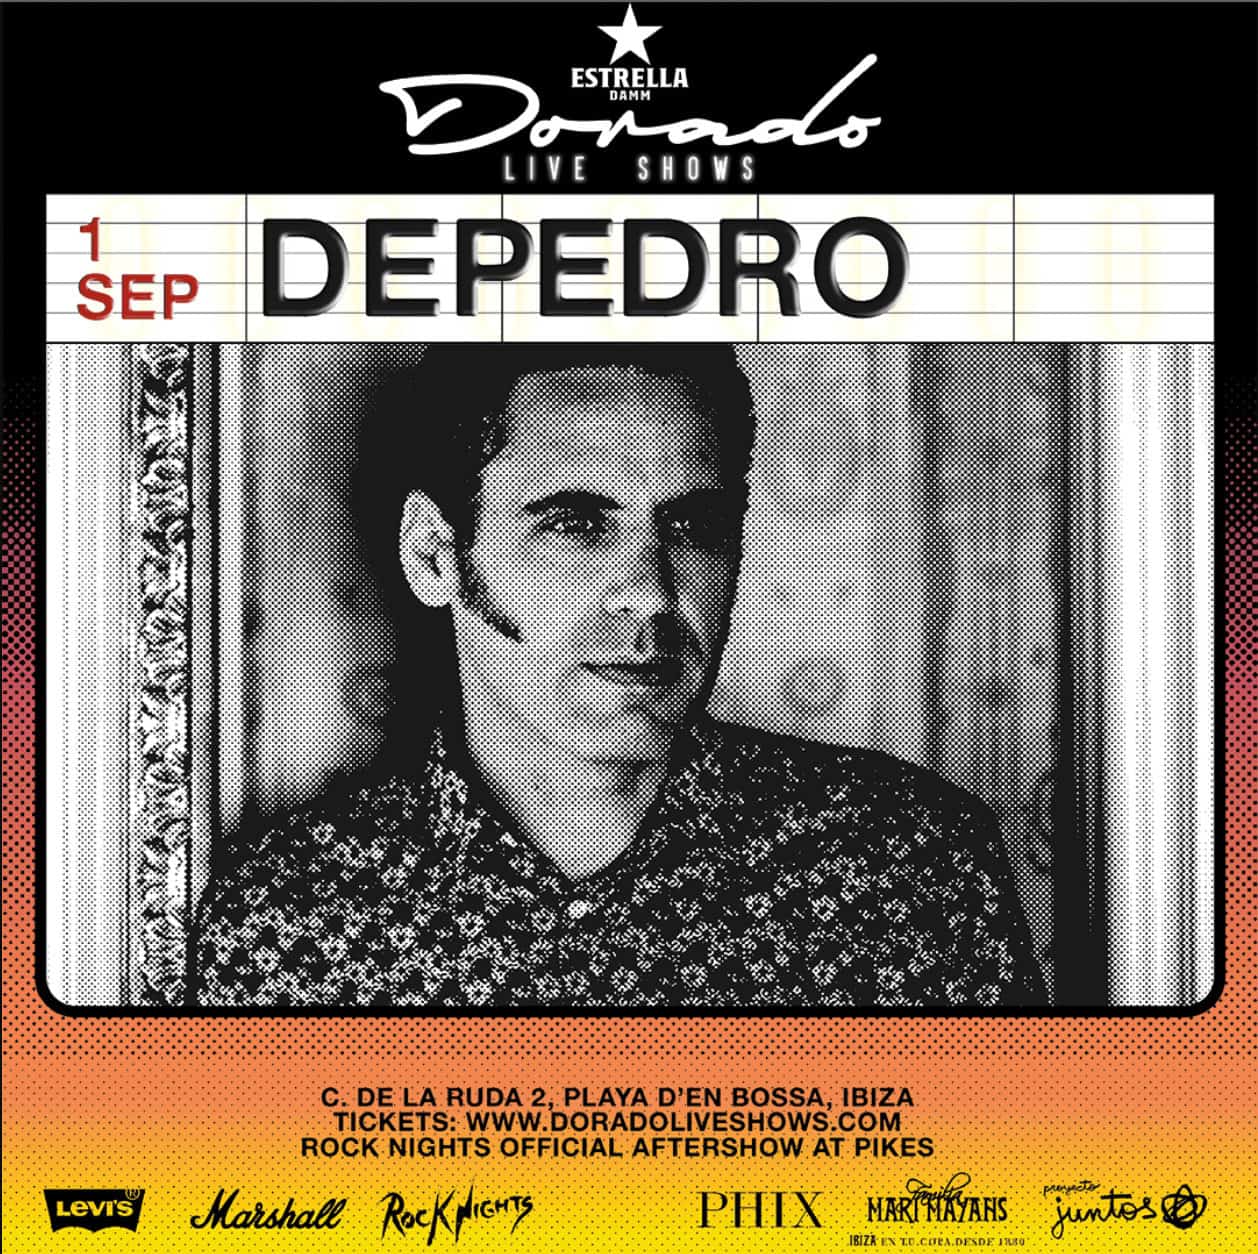 Depedro bei den Dorado Live Shows in Santos Ibiza Ibiza